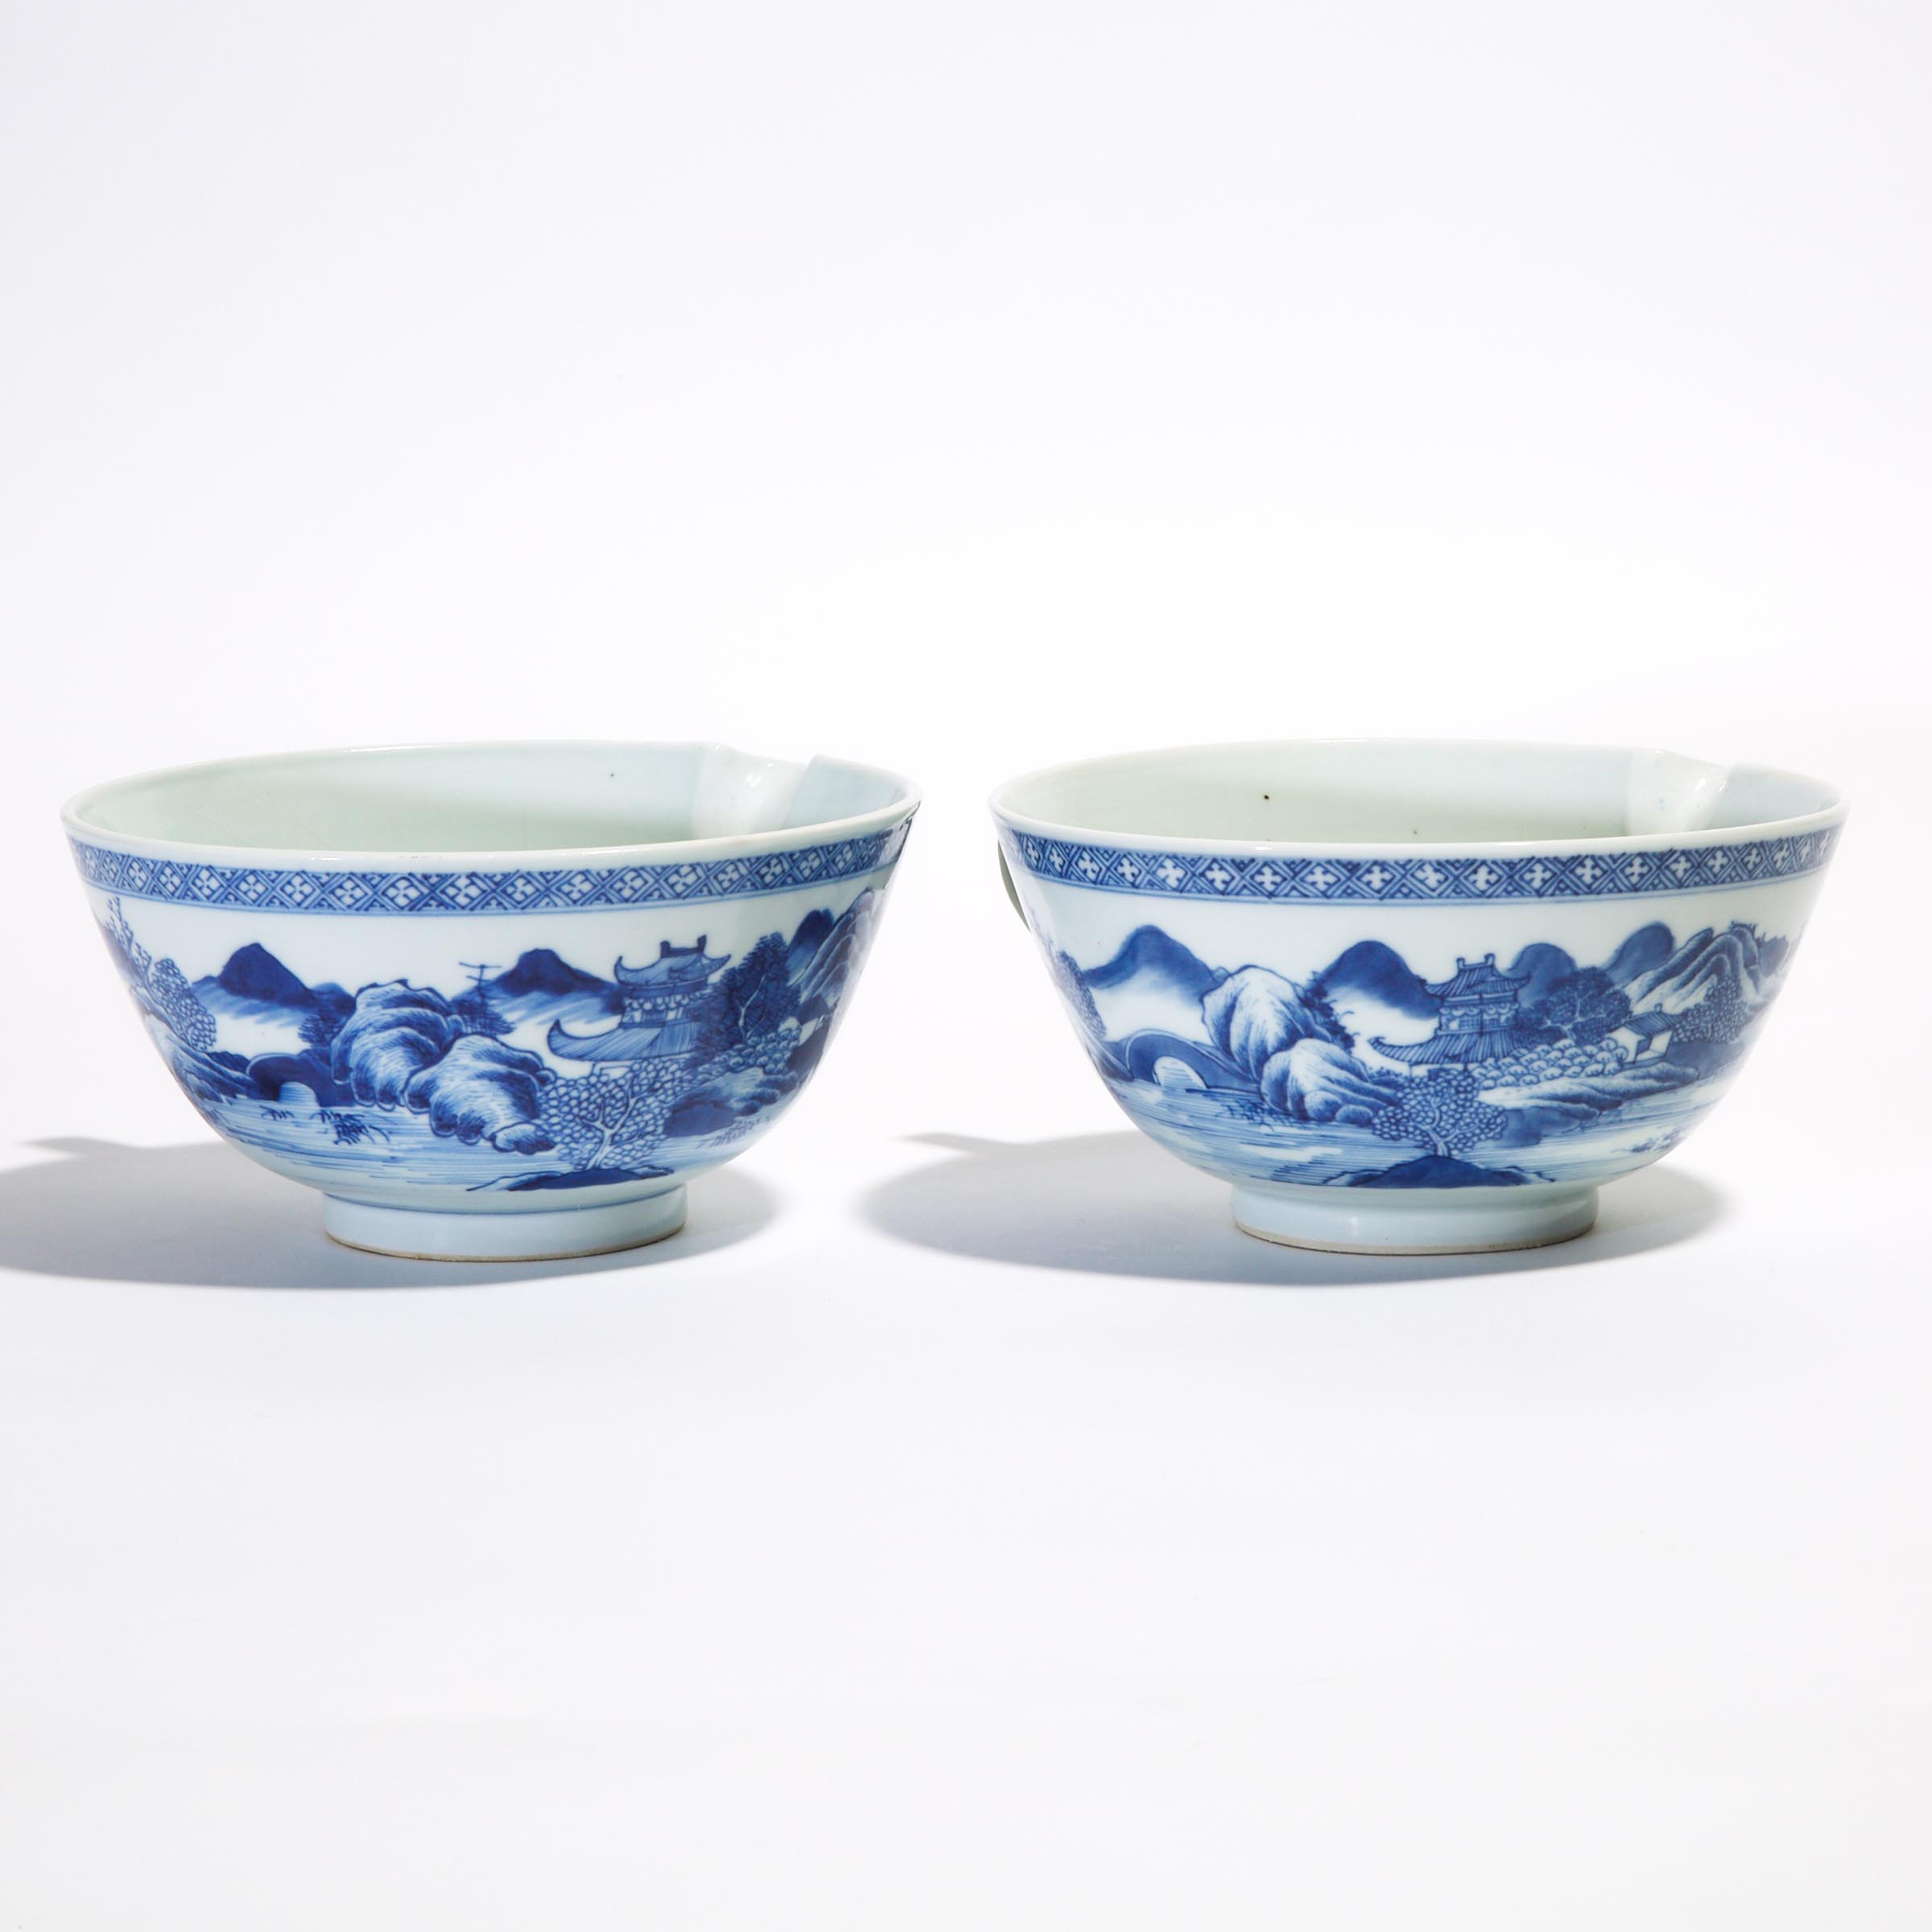 Two Large Bowl-Shaped Jugs from the Nanking Cargo, Qianlong Period, Circa 1750